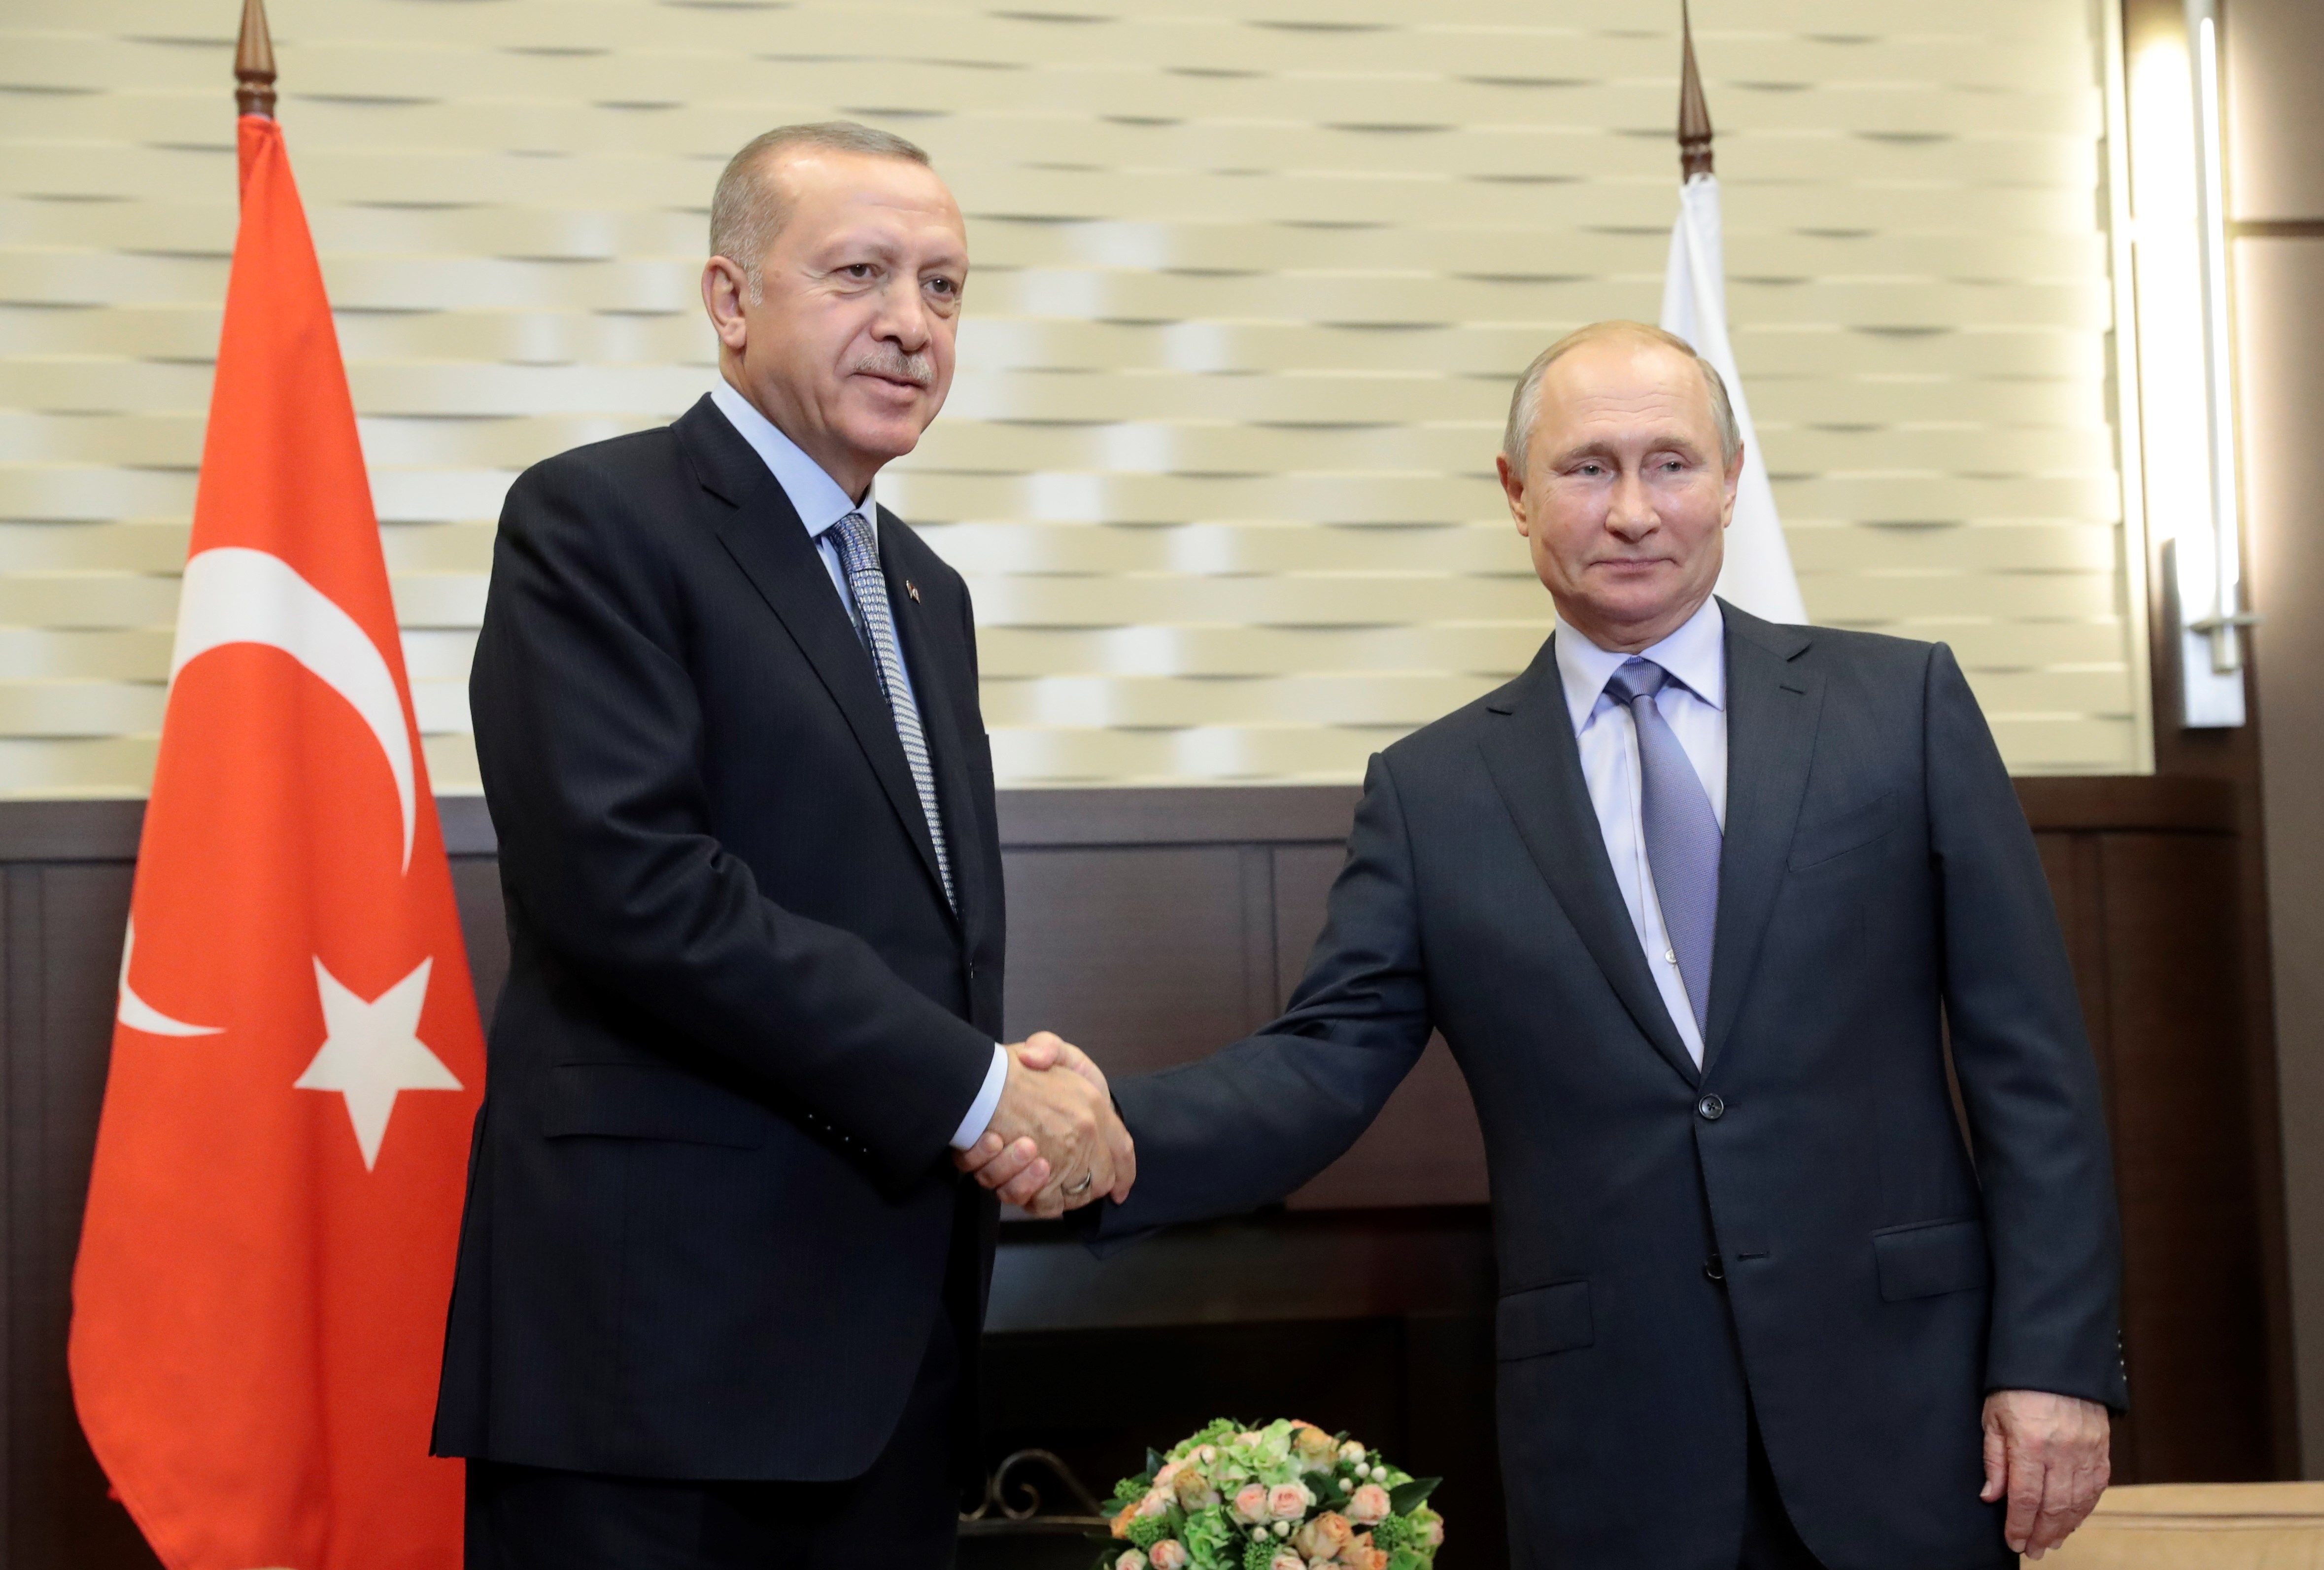 Fi de la invasió: Putin i Erdogan es reparteixen la frontera del nord de Síria